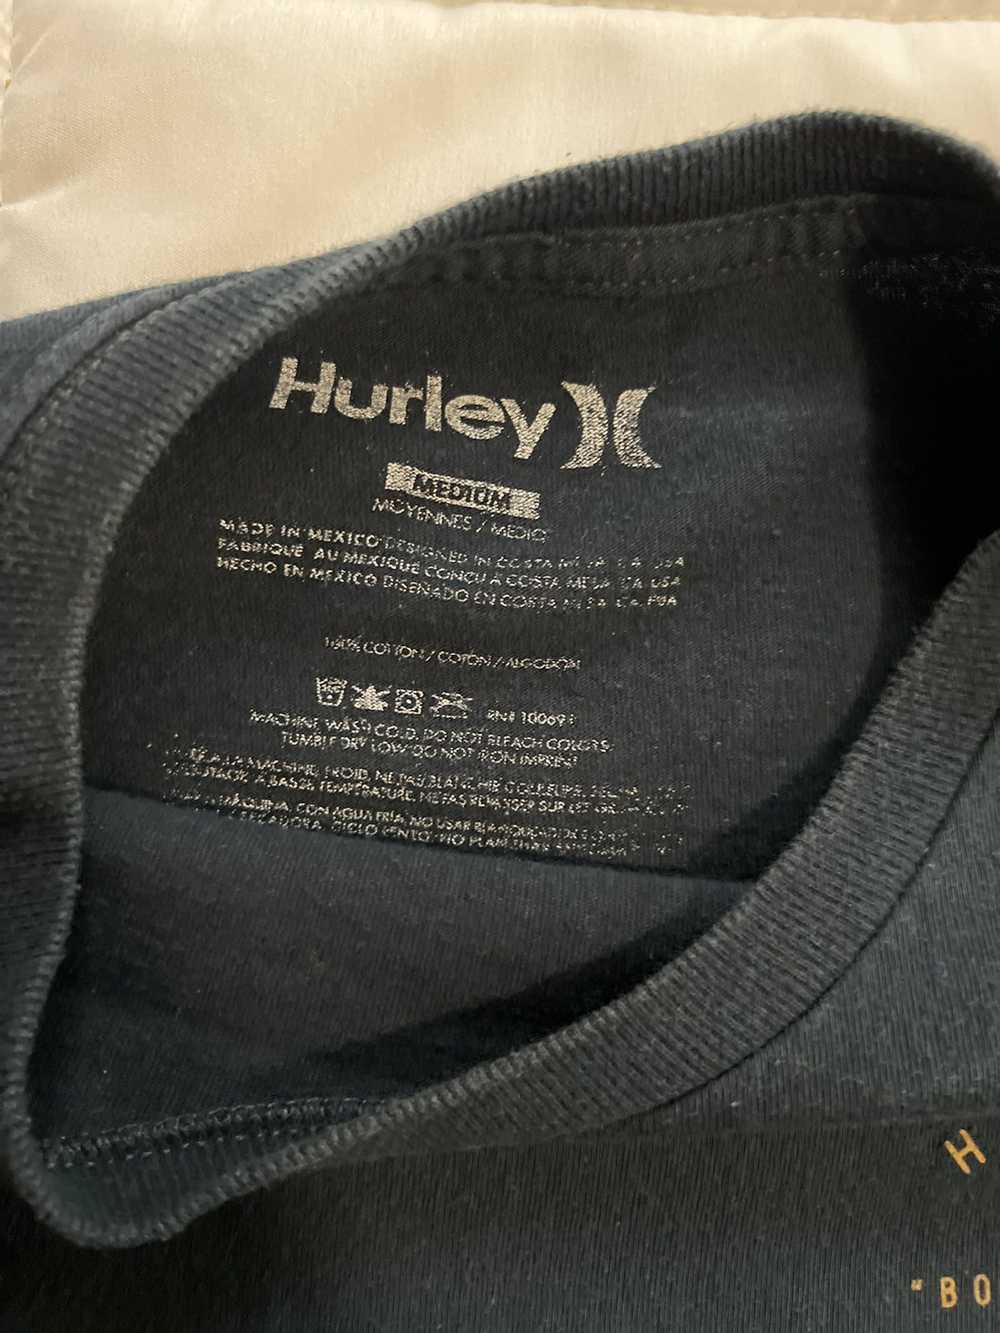 Hurley Hurley co T-shirt - image 2